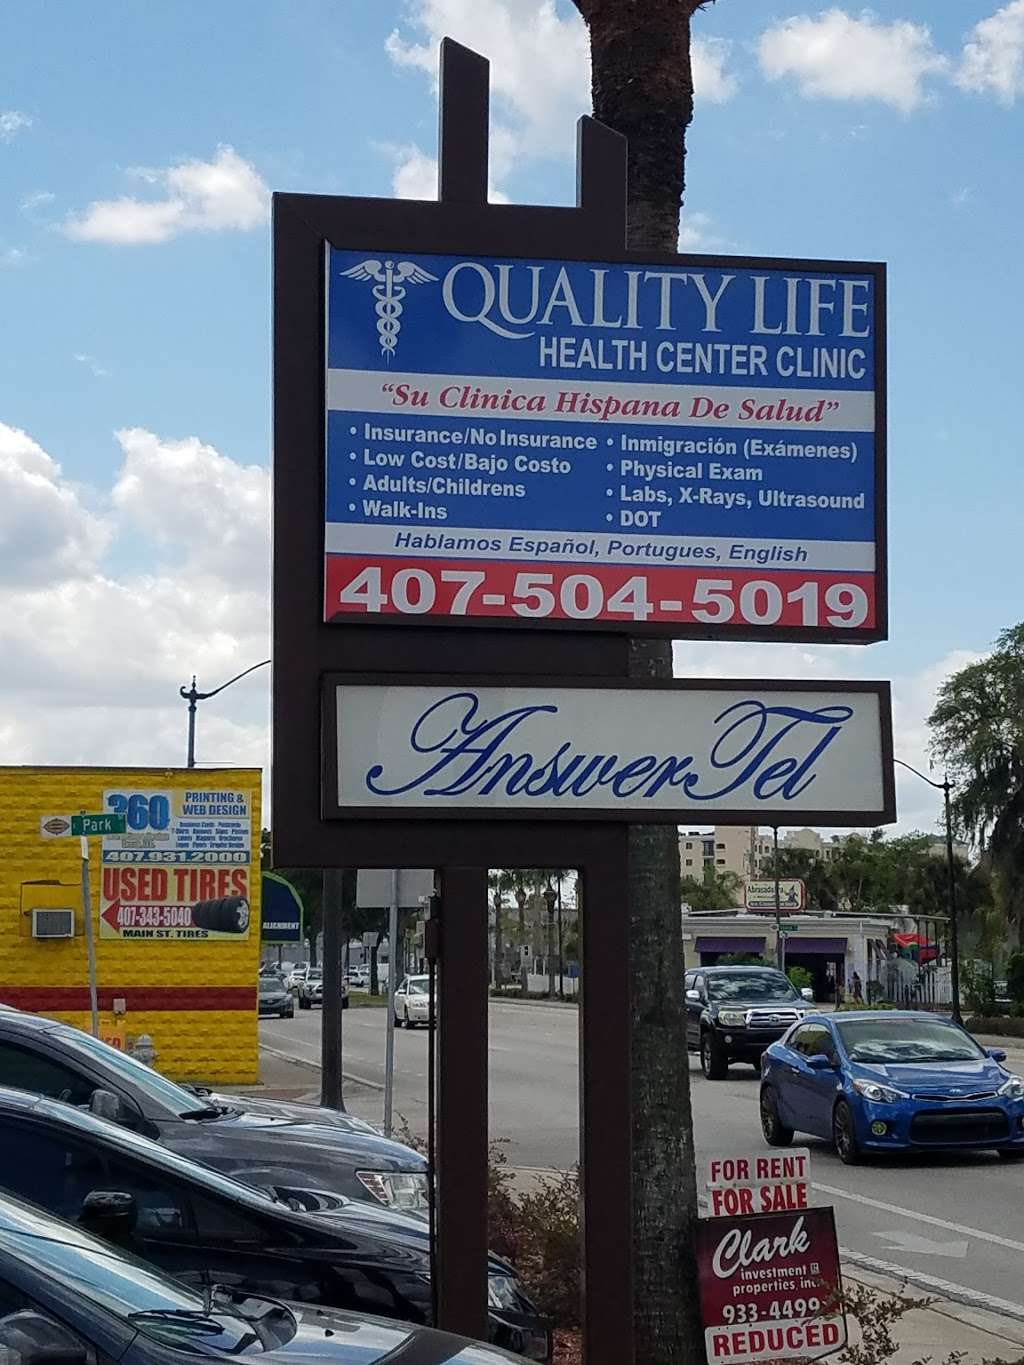 Quality Life Health Center Inc. | 705 N Main St, Kissimmee, FL 34744 | Phone: (407) 504-5019